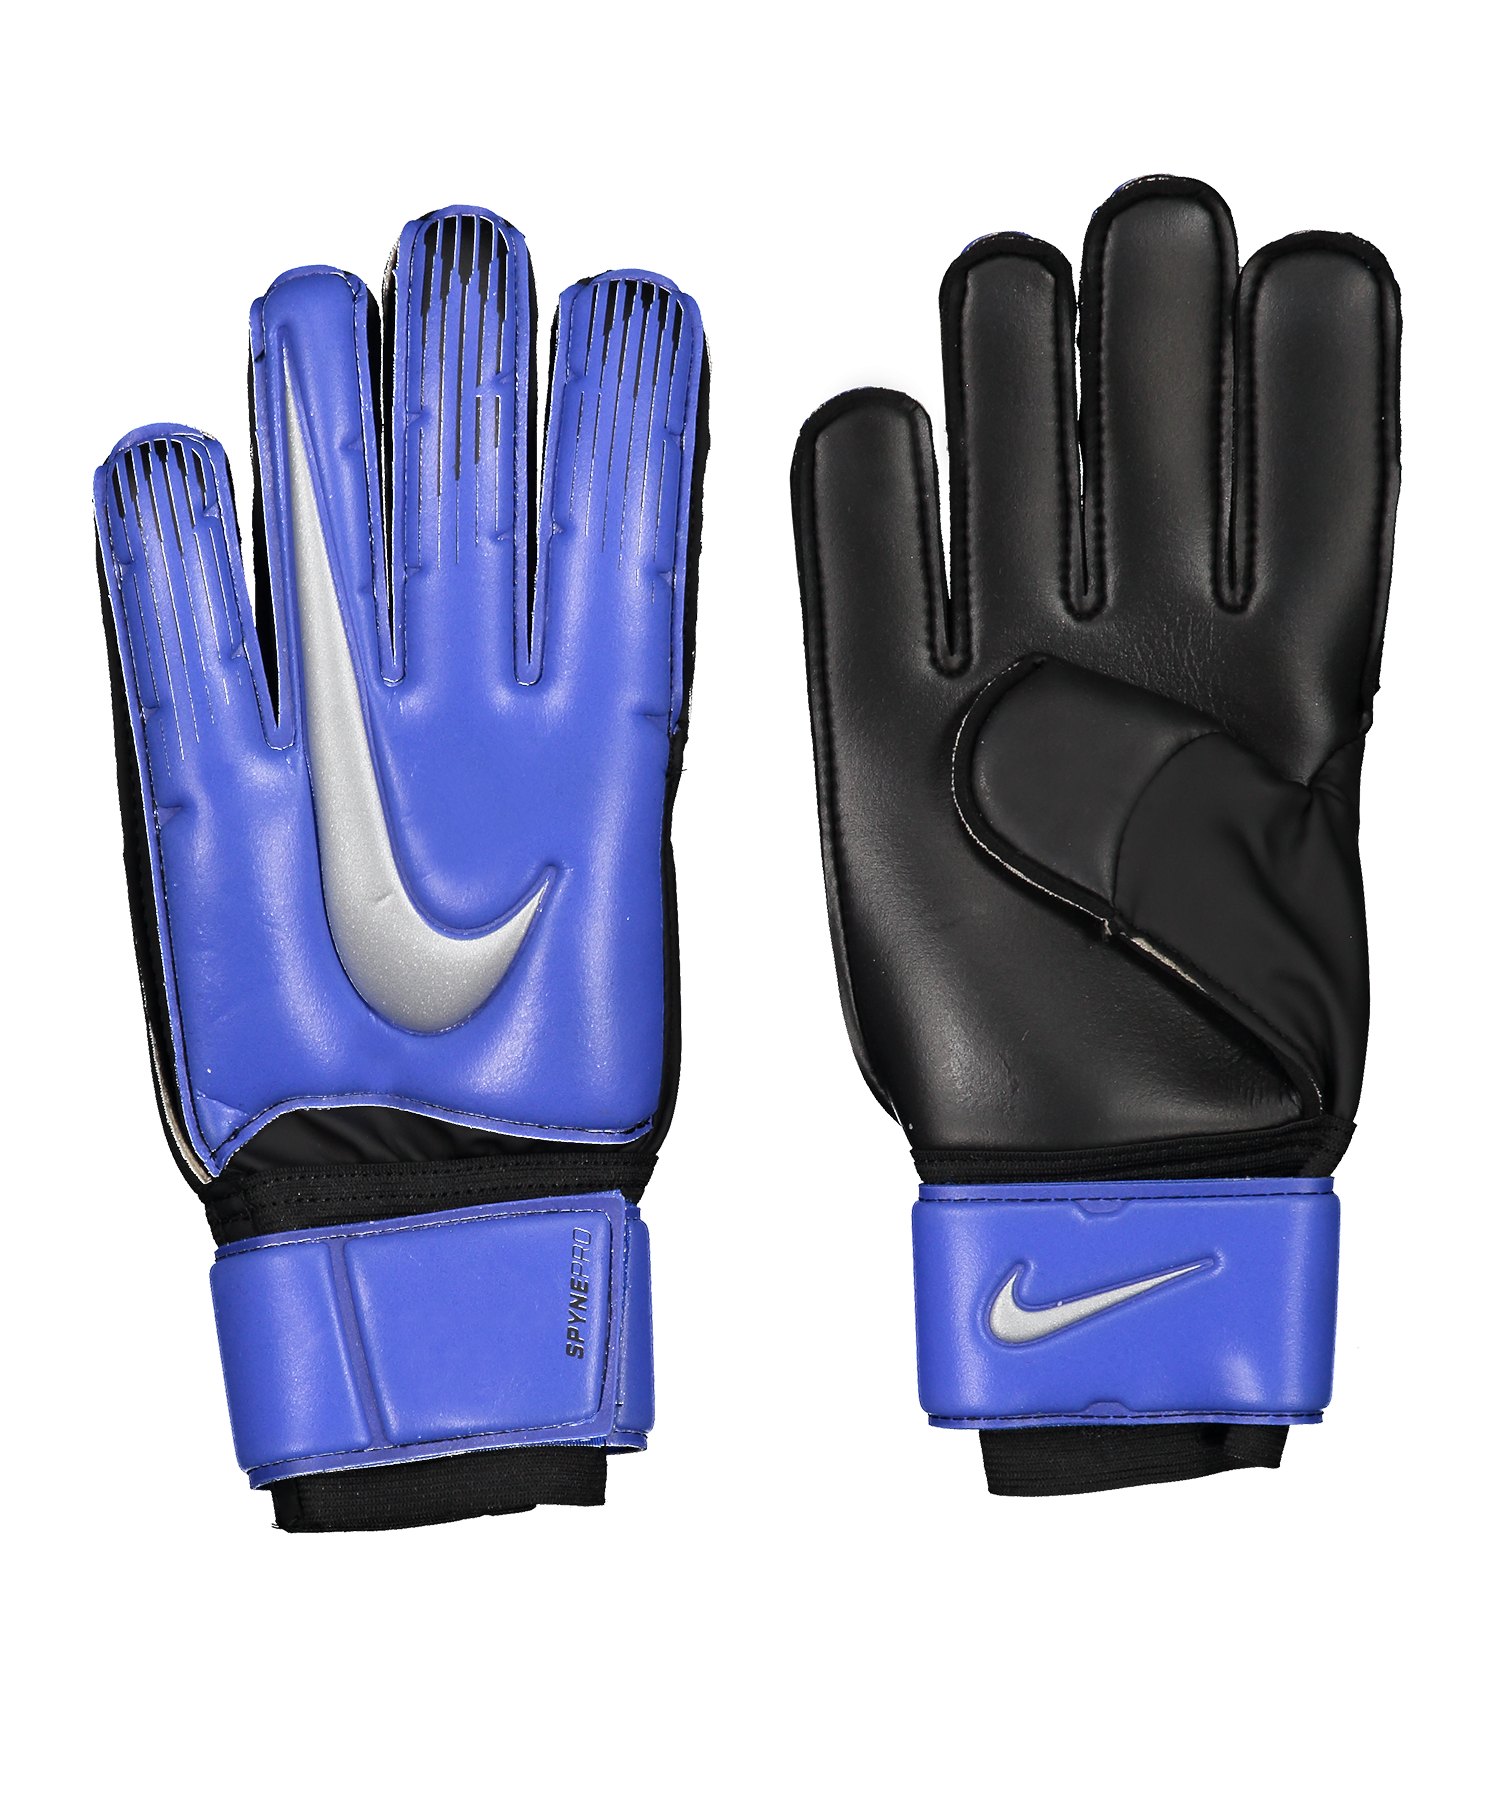 Nike Spyne Pro Torwarthandschuh Blau F410 - blau